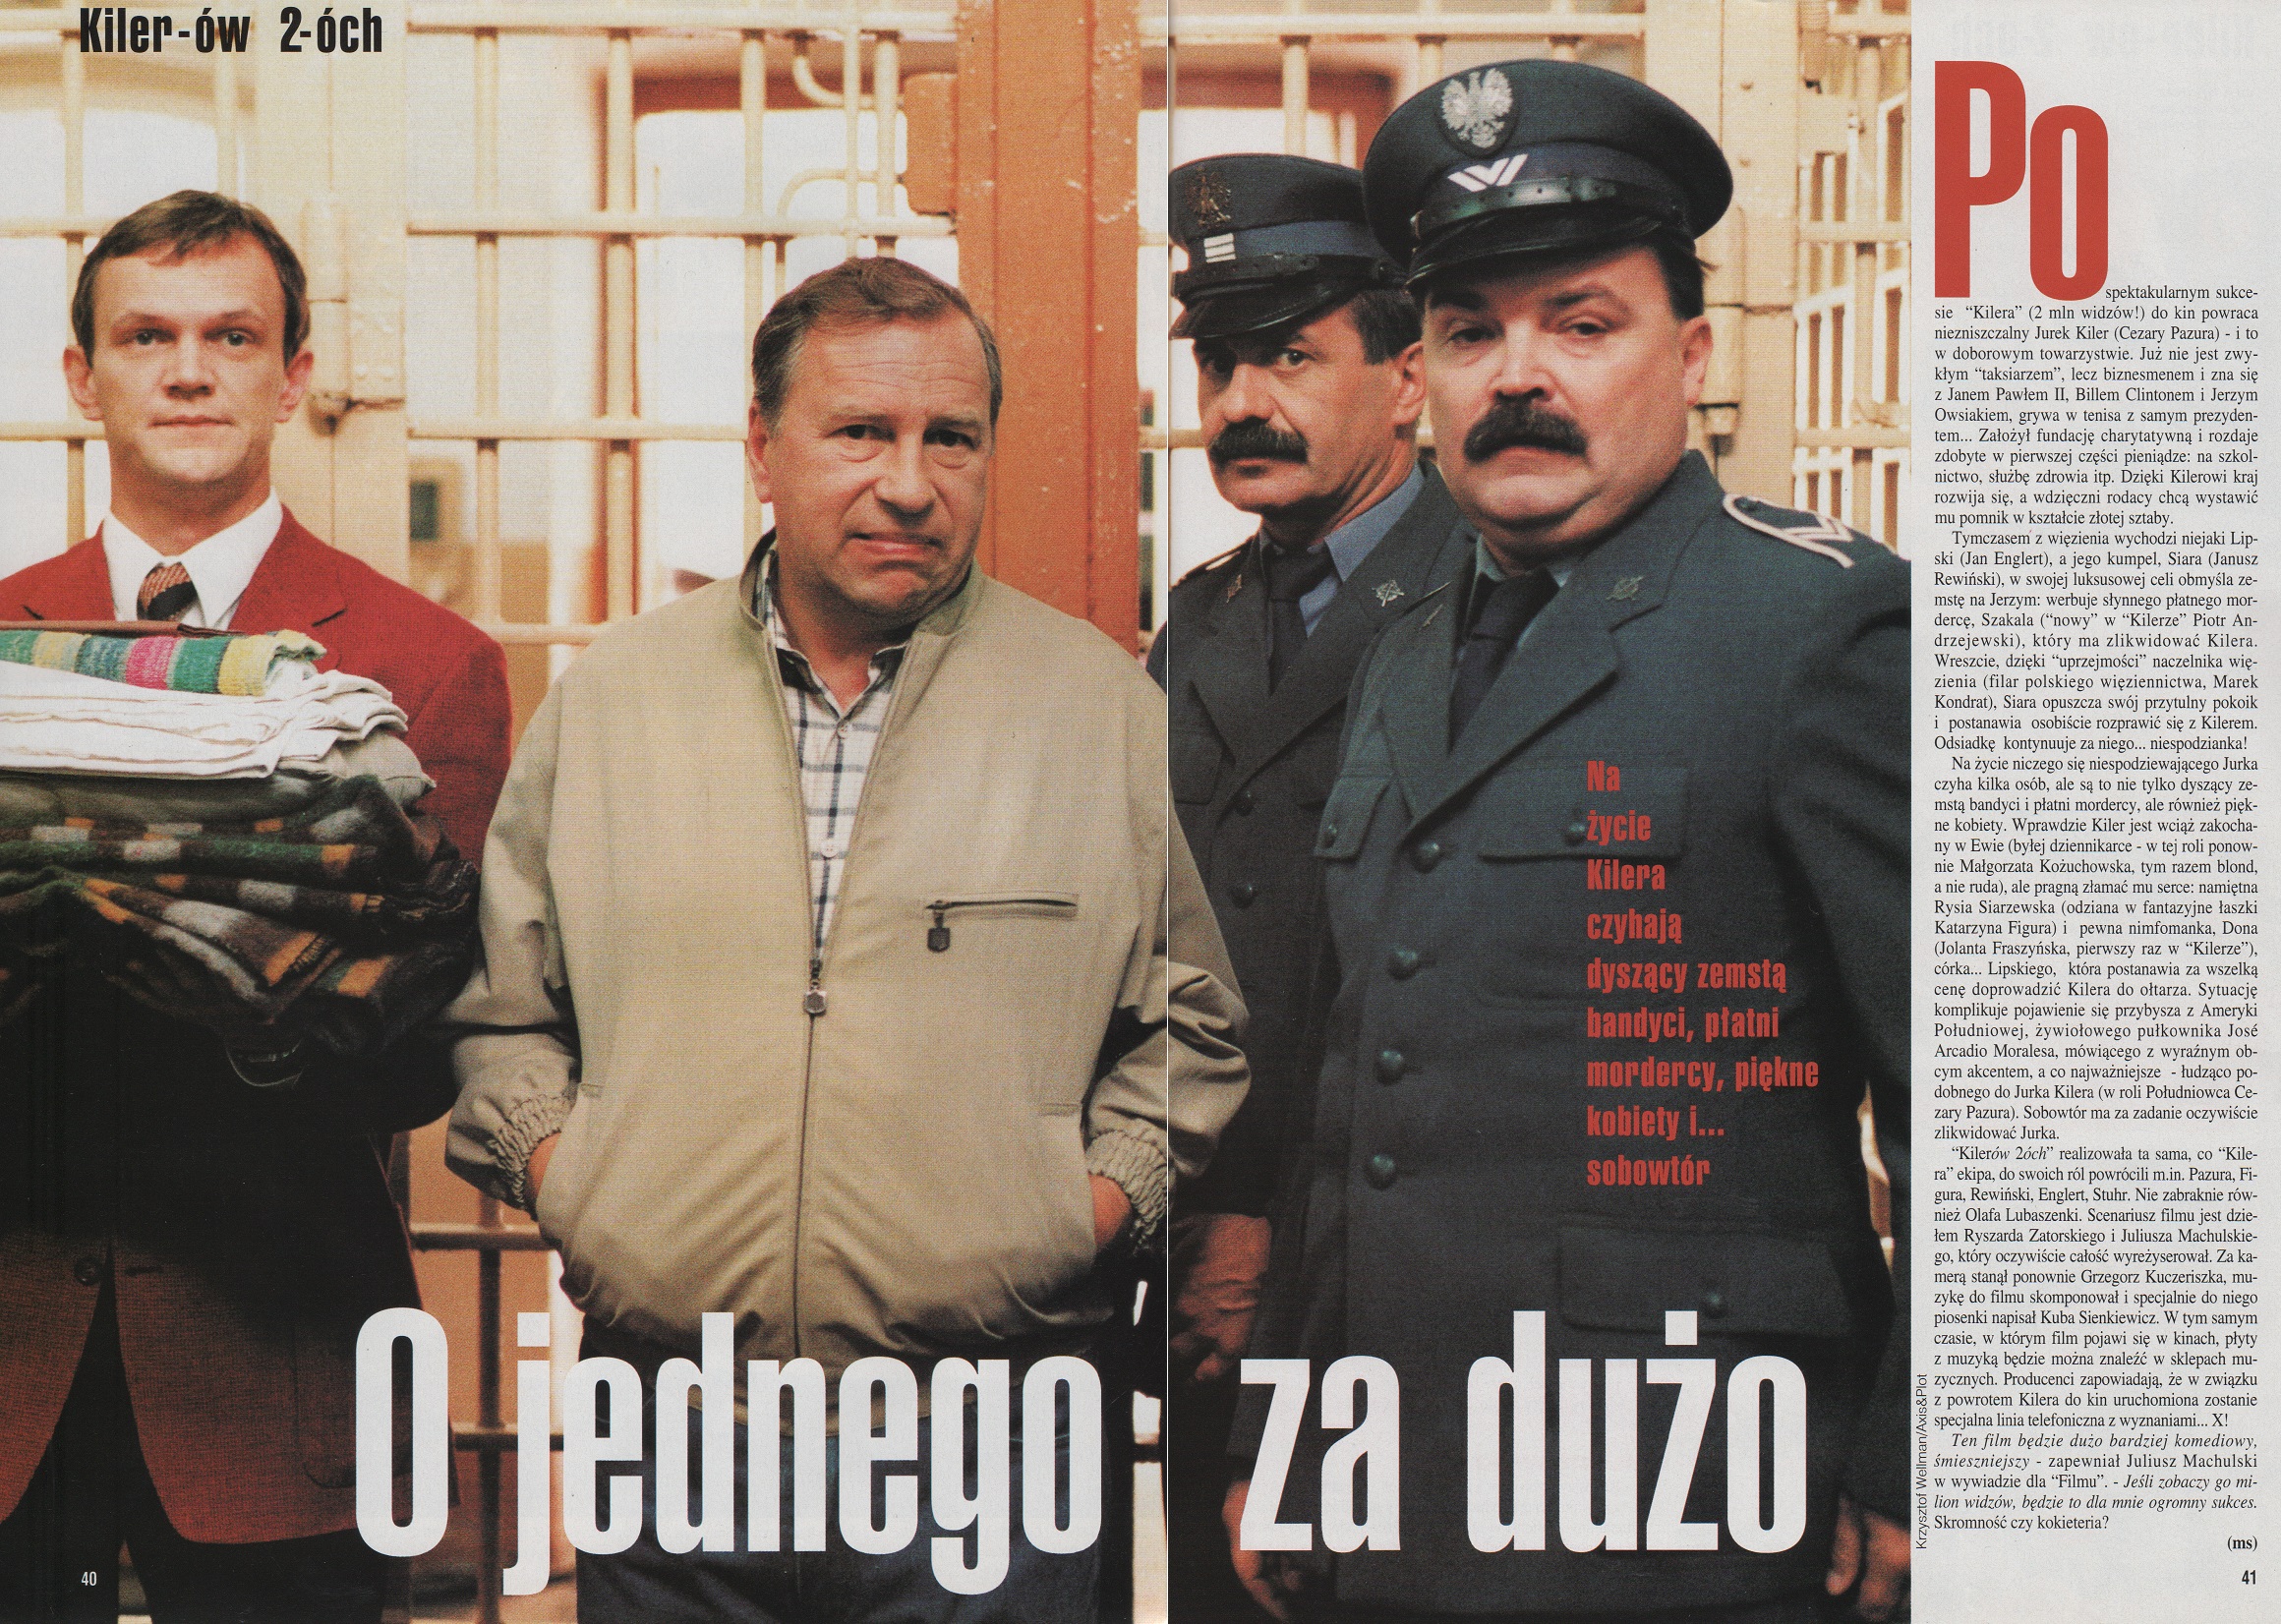 K - Kiler-ów 2-óch 1997, reż. Juliusz Machulski Cezary Pazura,... Małgorzata Kożuchowska, Jerzy Stuhr. Film nr 1, I 1999 1.jpg